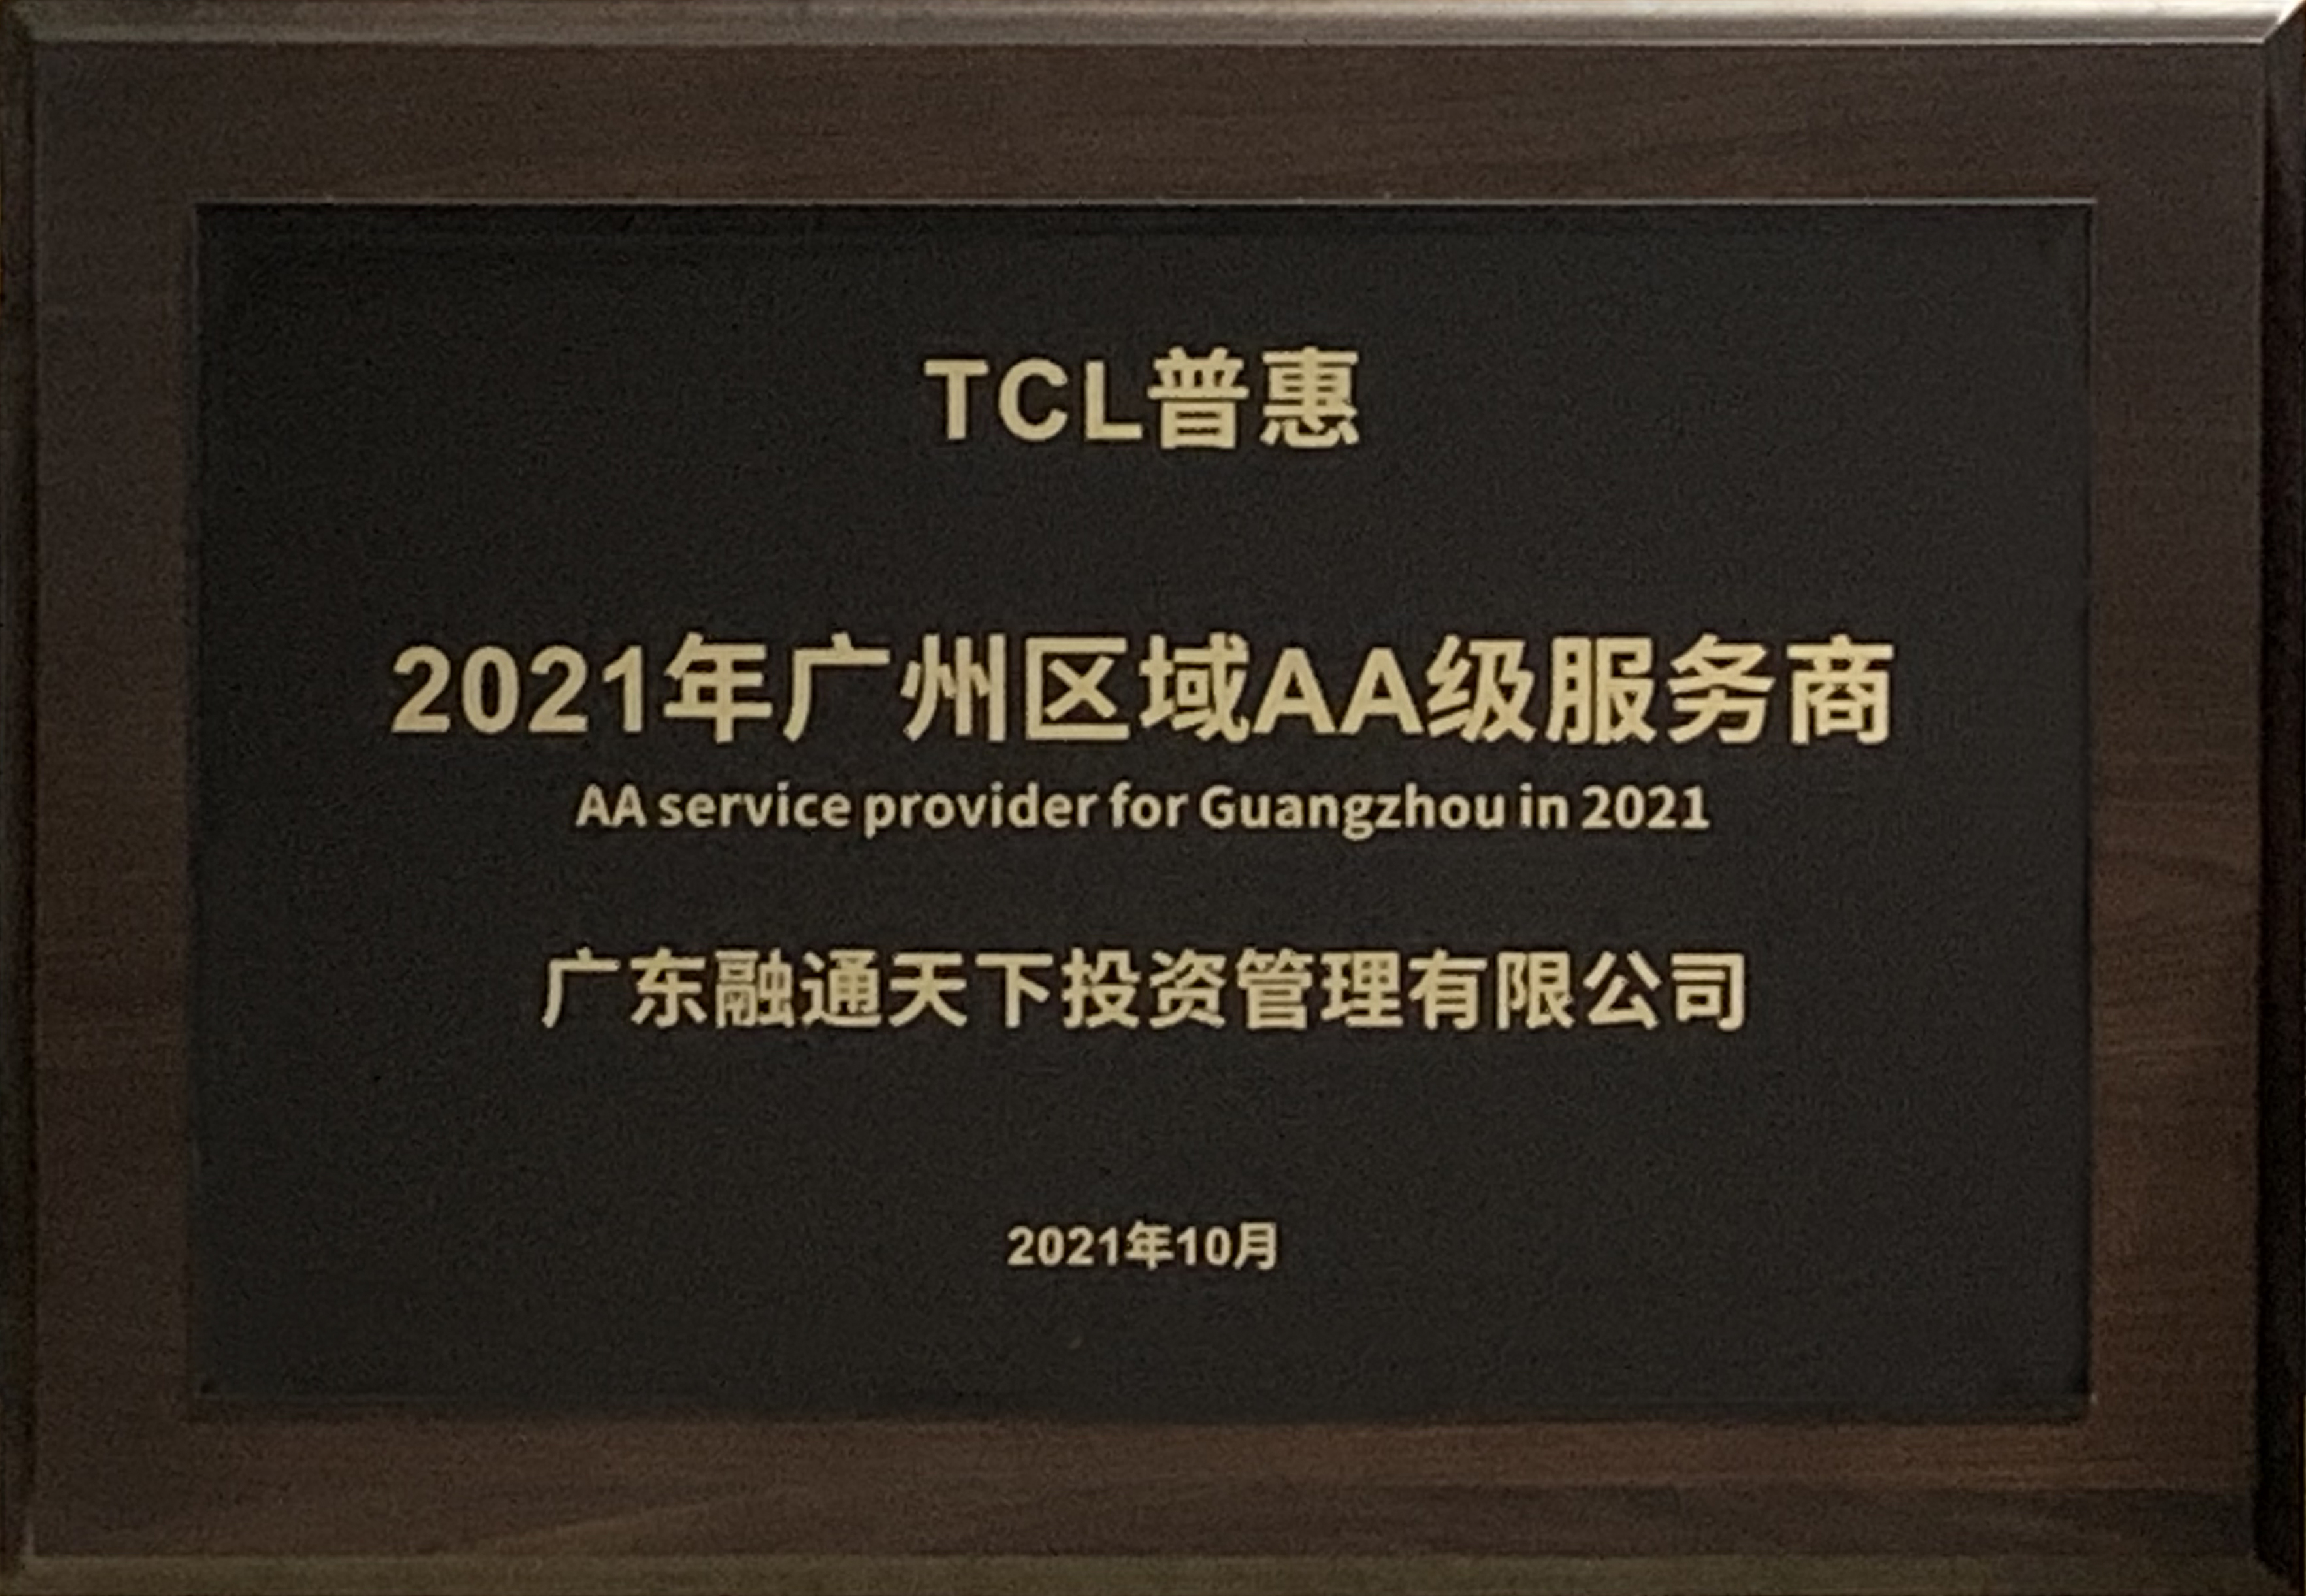 廣東融通天下投資管理榮獲TCL普惠“2021年廣州區域AA級服務商”榮譽稱號